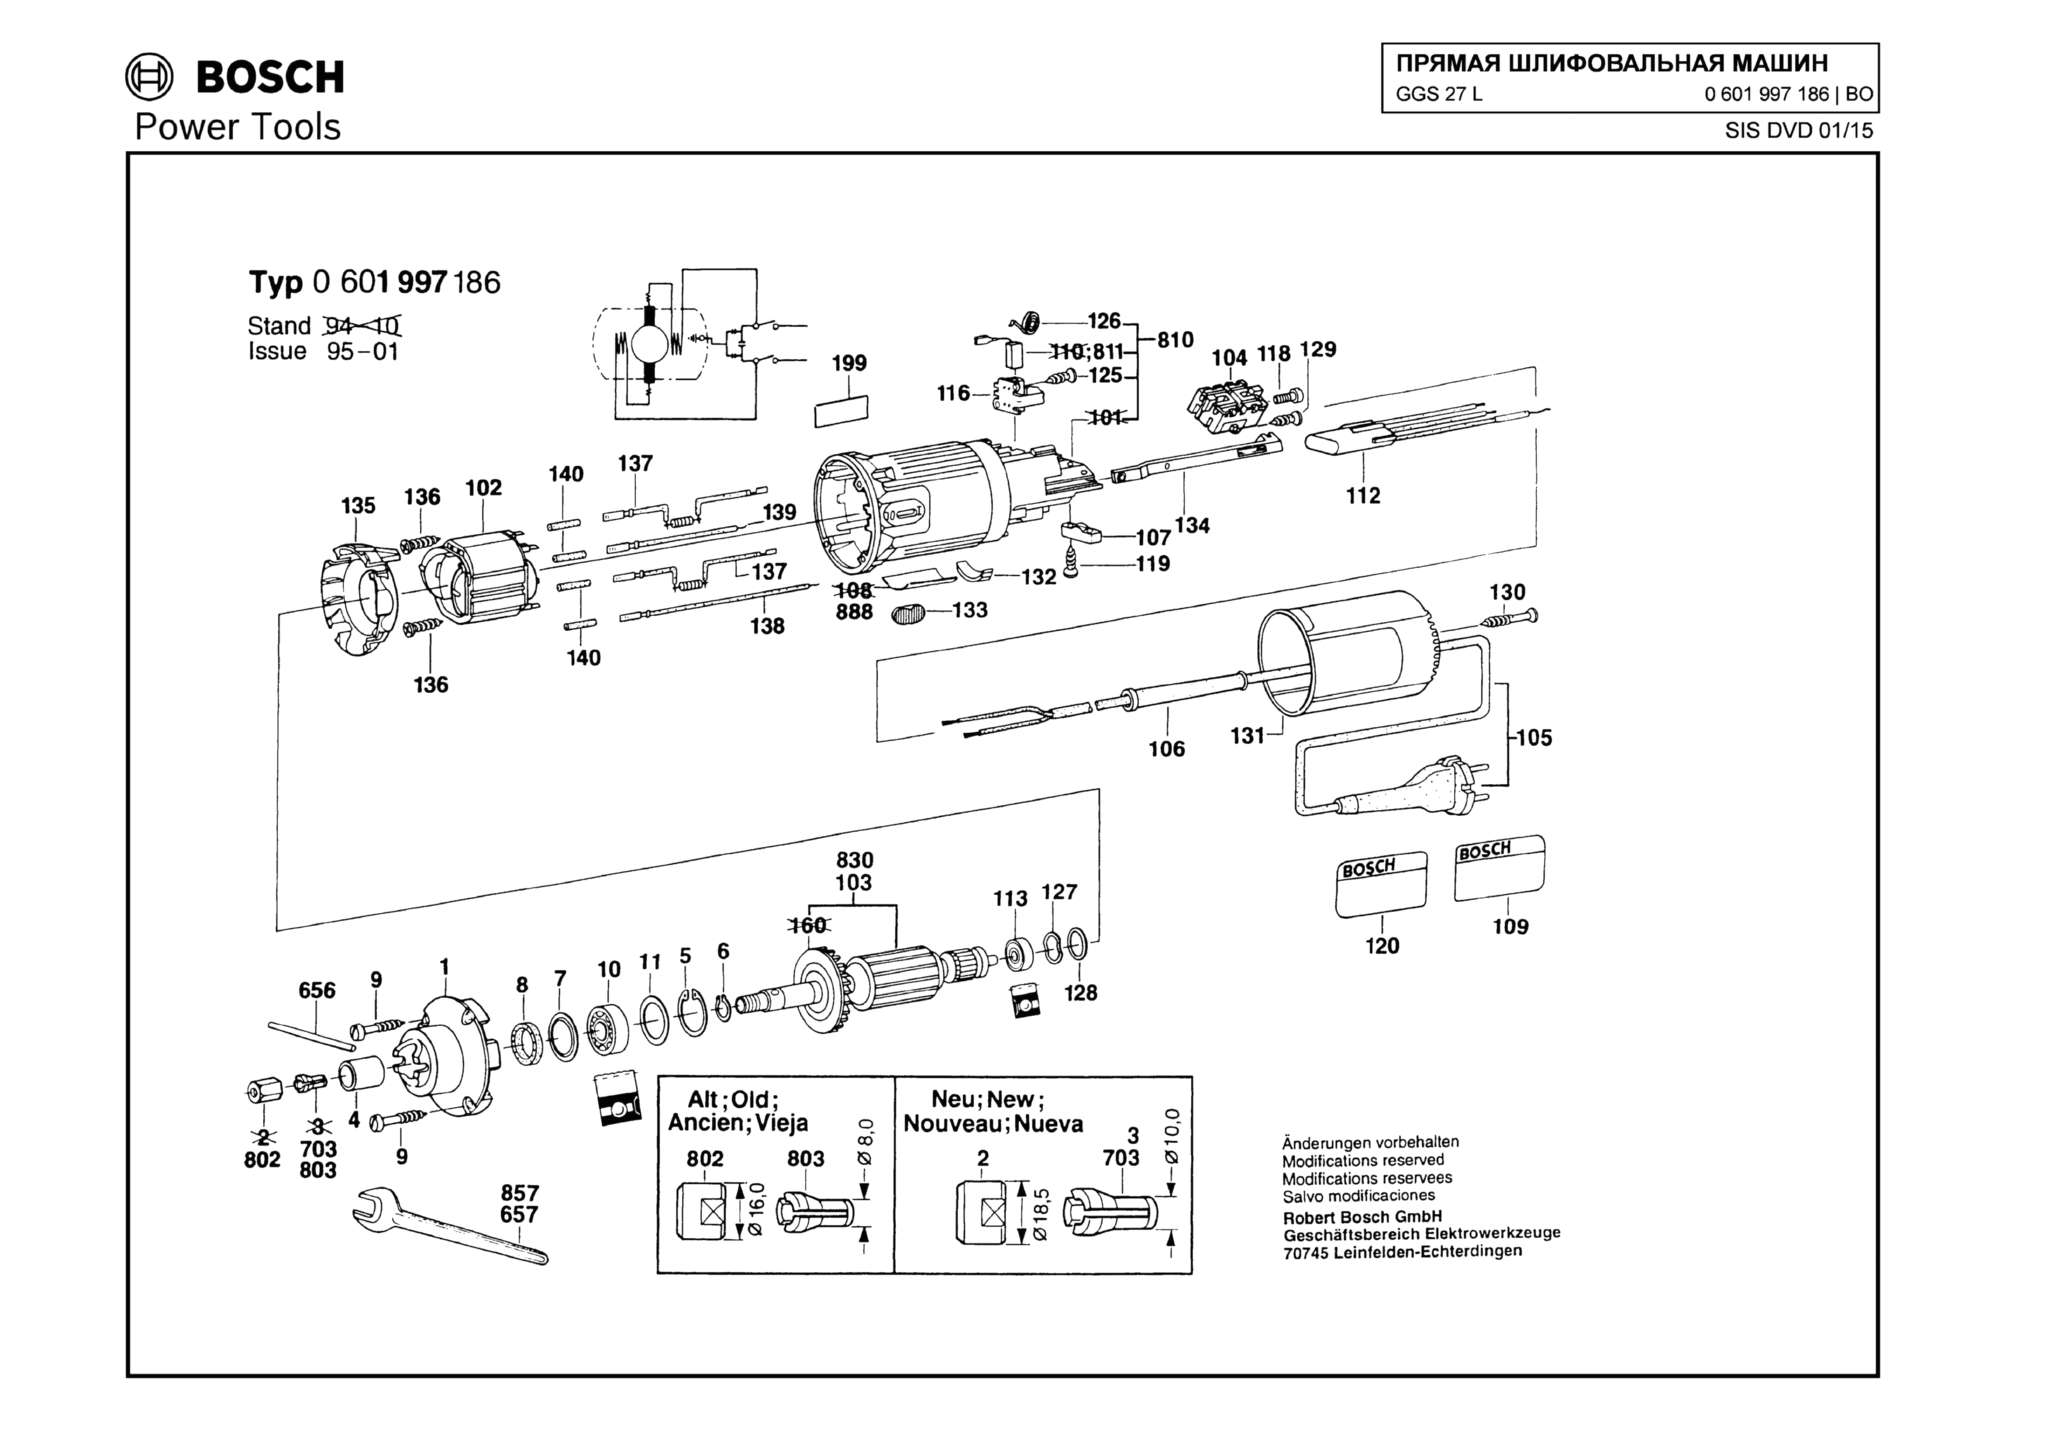 Запчасти, схема и деталировка Bosch GGS 27 L (ТИП 0601997186)